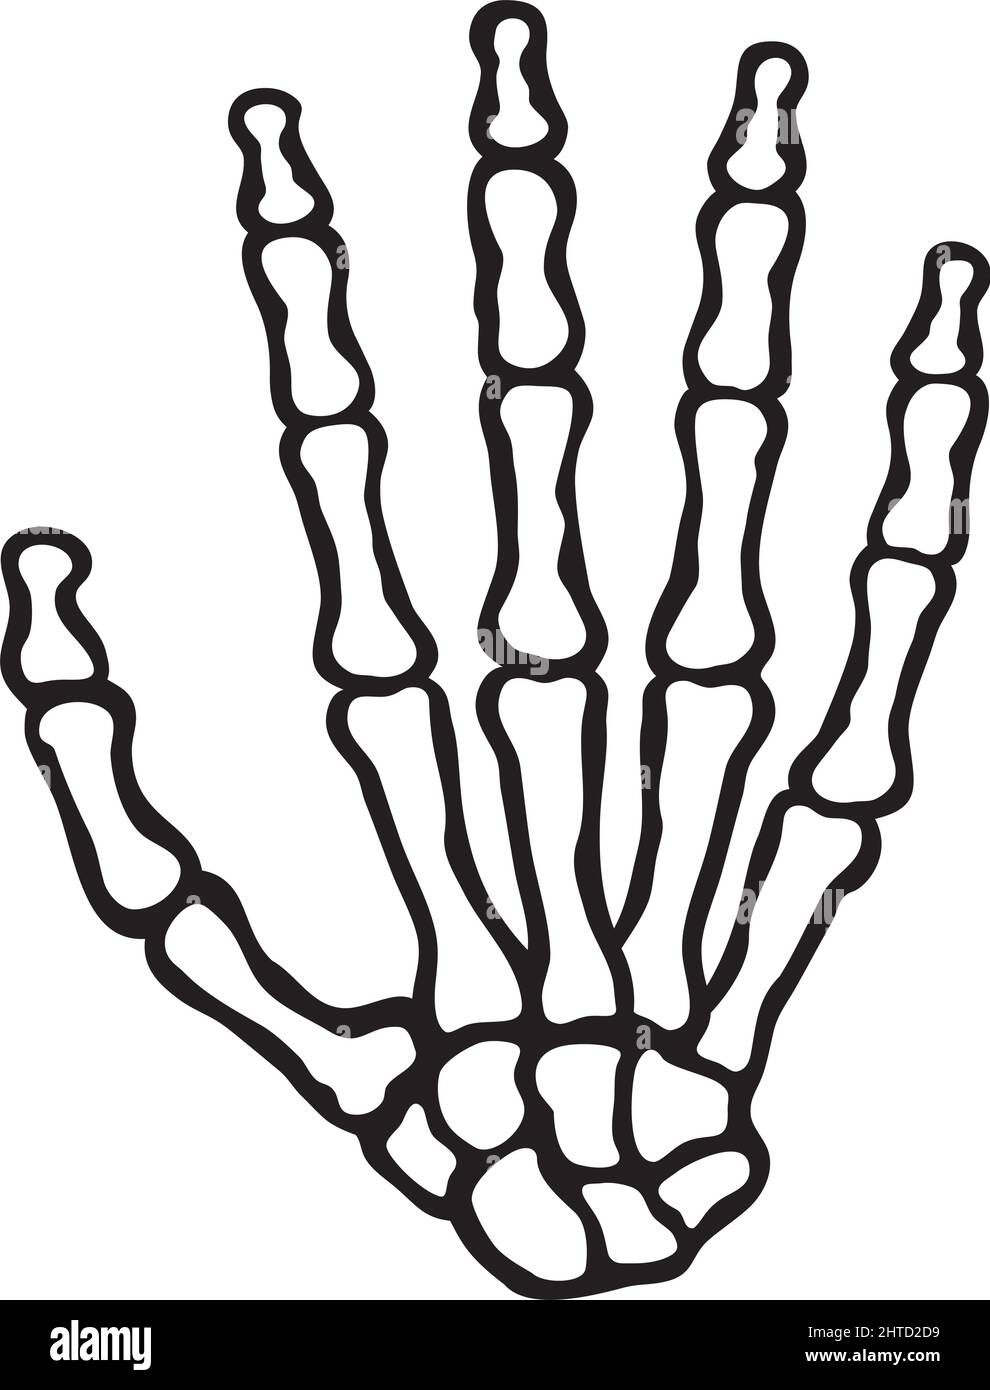 Vektor-Illustration für menschliche Skeletthand (Knochen) Stock Vektor